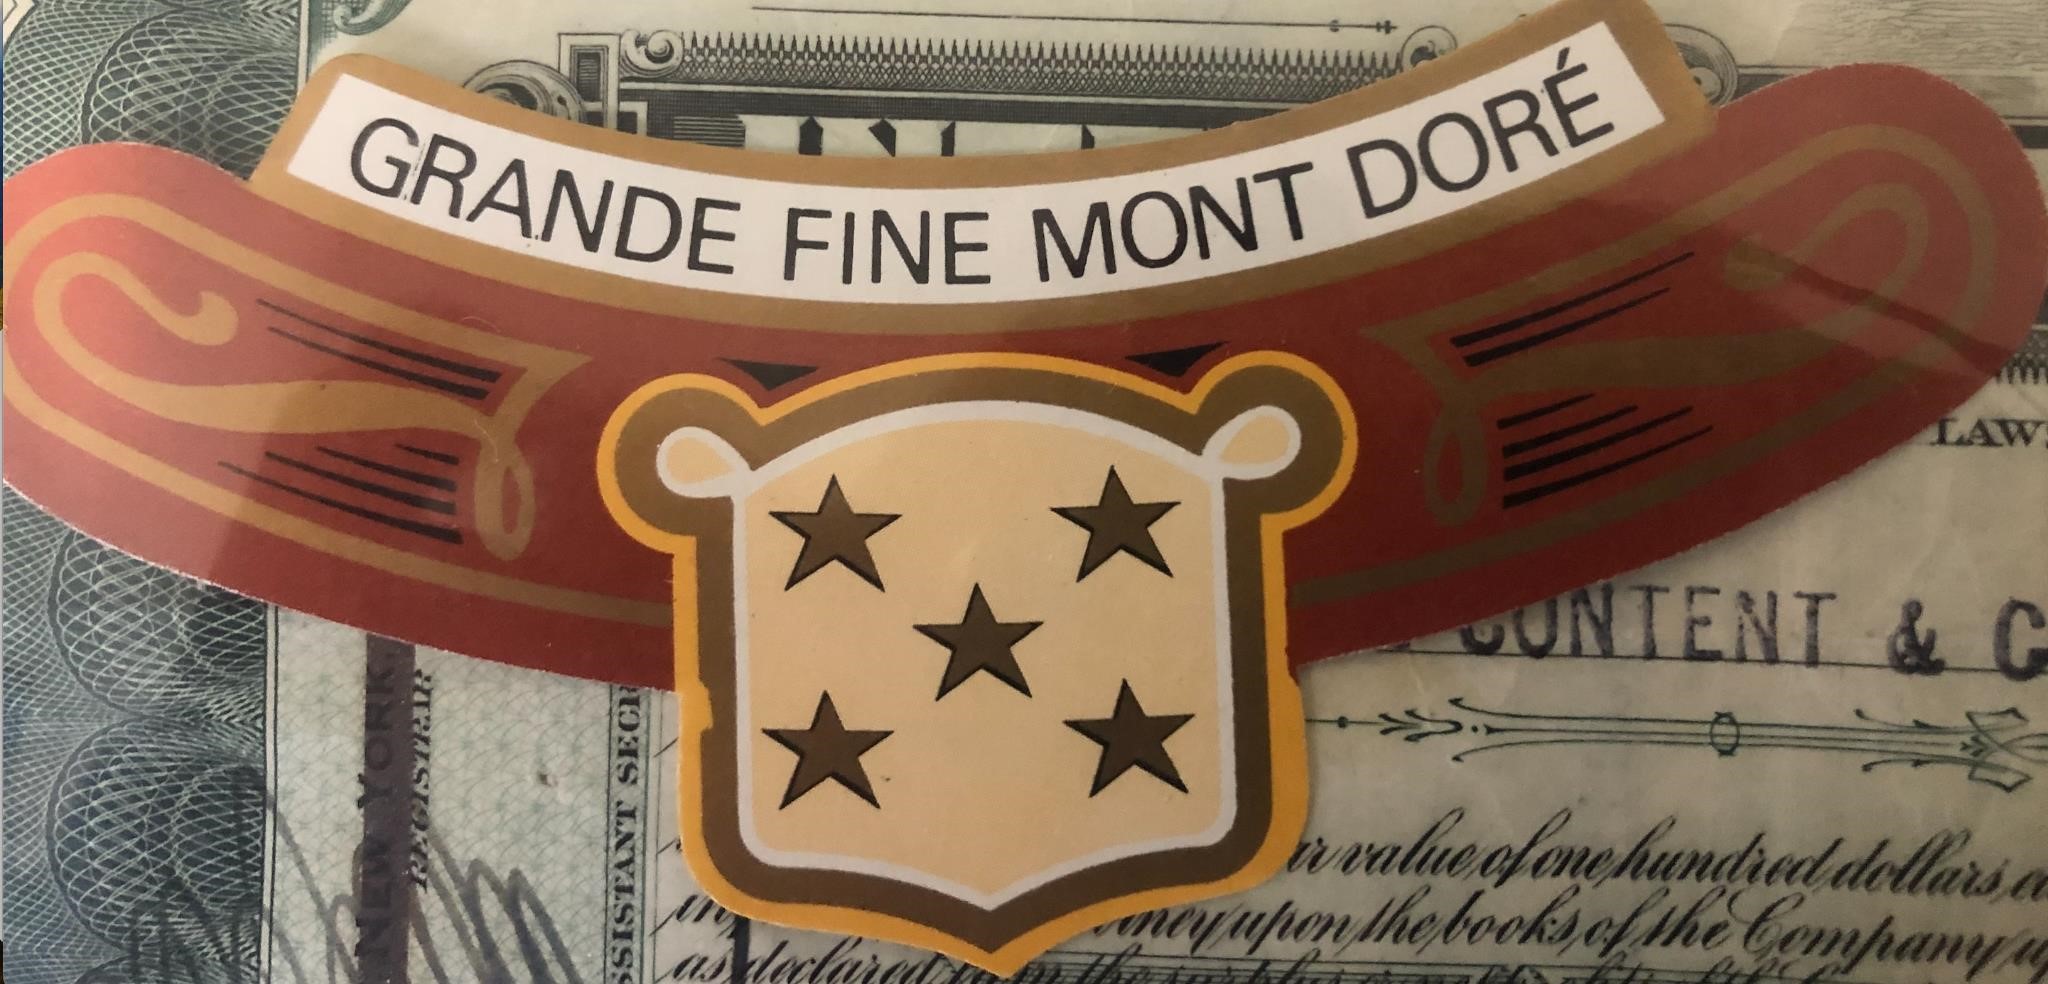 Grand Fine Mont Dore Cigar Label